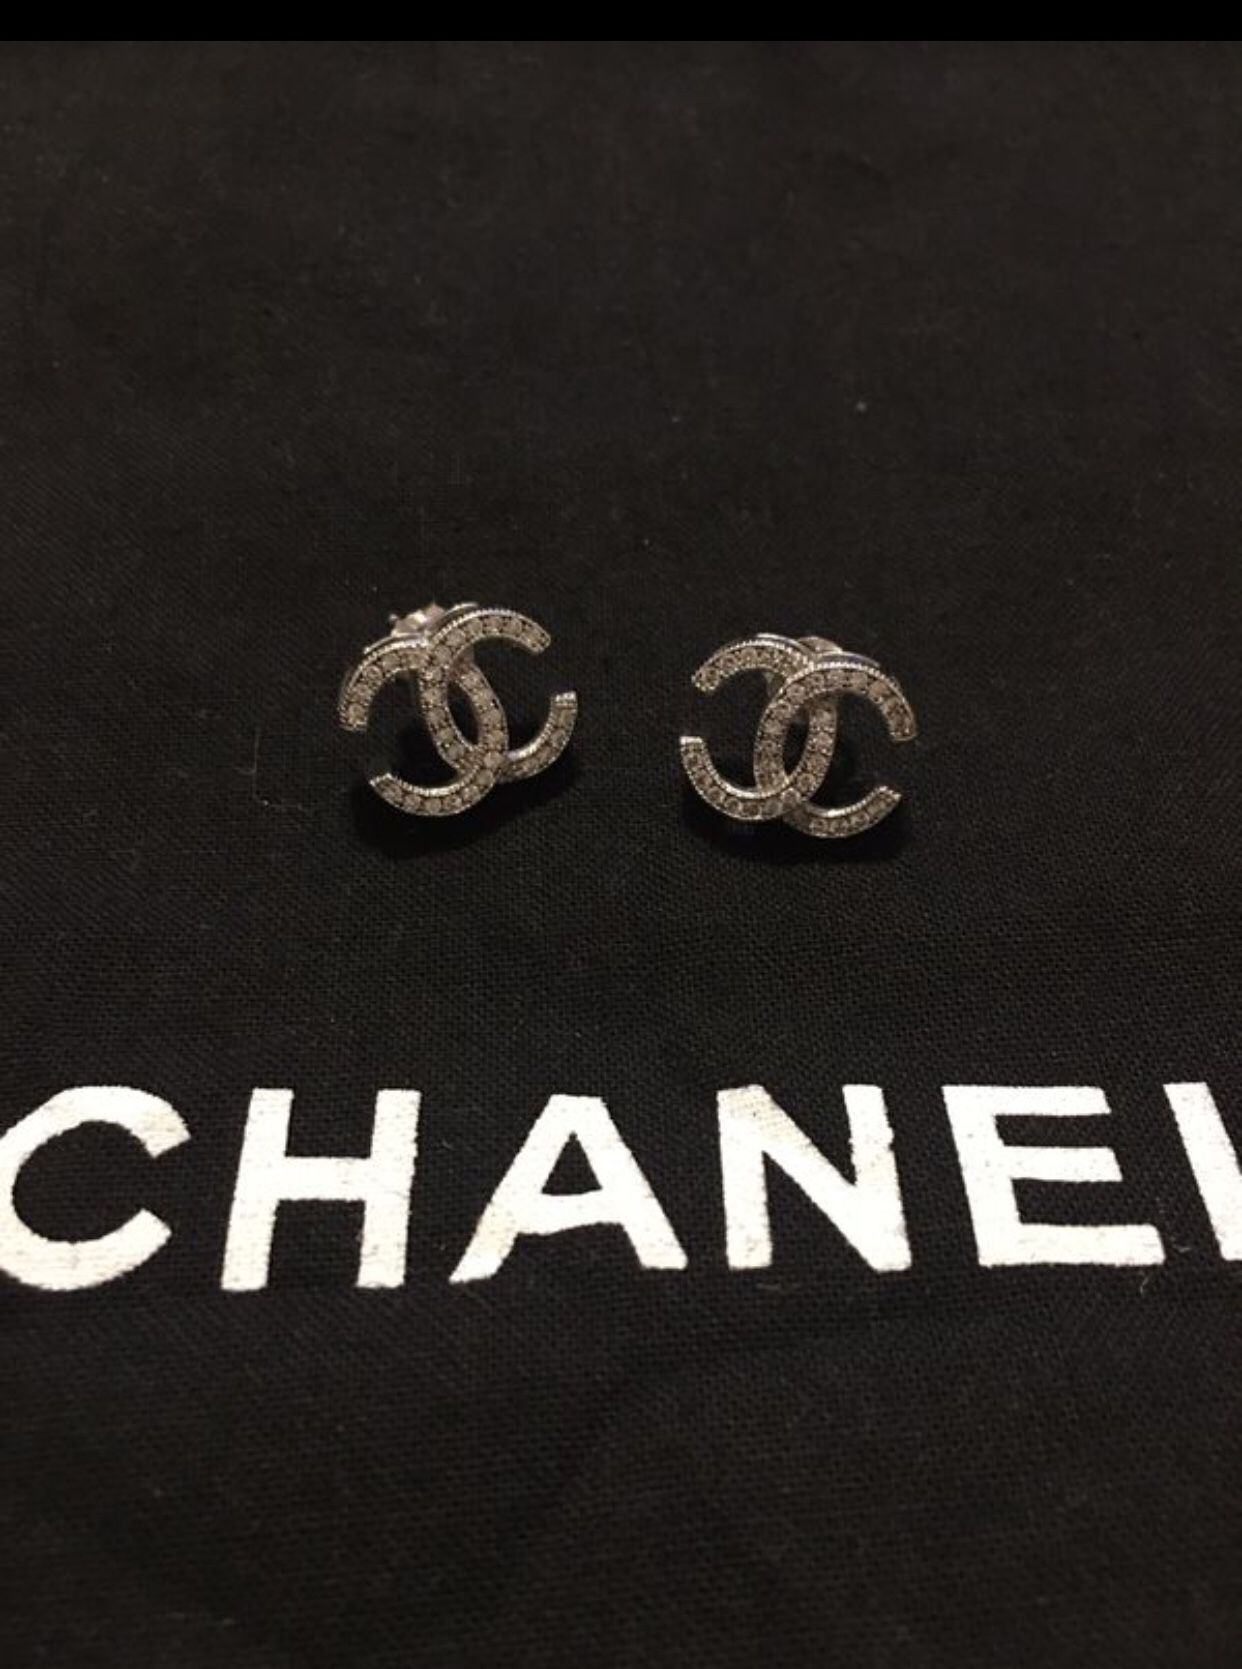 Chanel earrings in 14k gold... 1/2k of diamonds